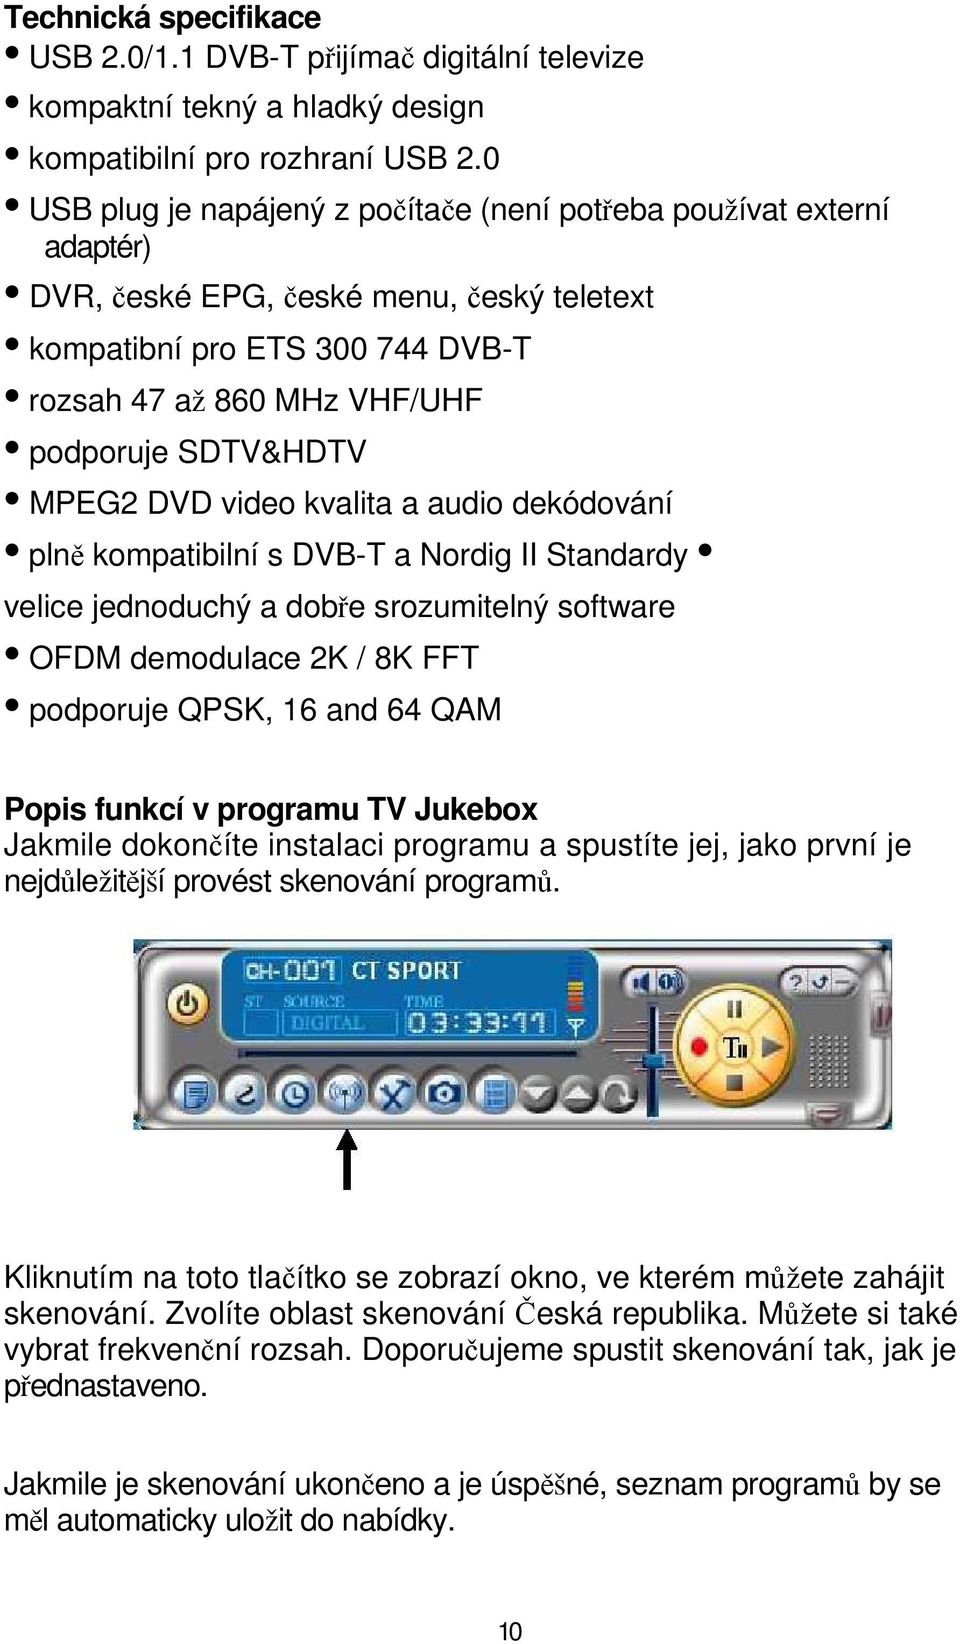 MPEG2 DVD video kvalita a audio dekódování plně kompatibilní s DVB-T a Nordig II Standardy velice jednoduchý a dobře srozumitelný software OFDM demodulace 2K / 8K FFT podporuje QPSK, 16 and 64 QAM